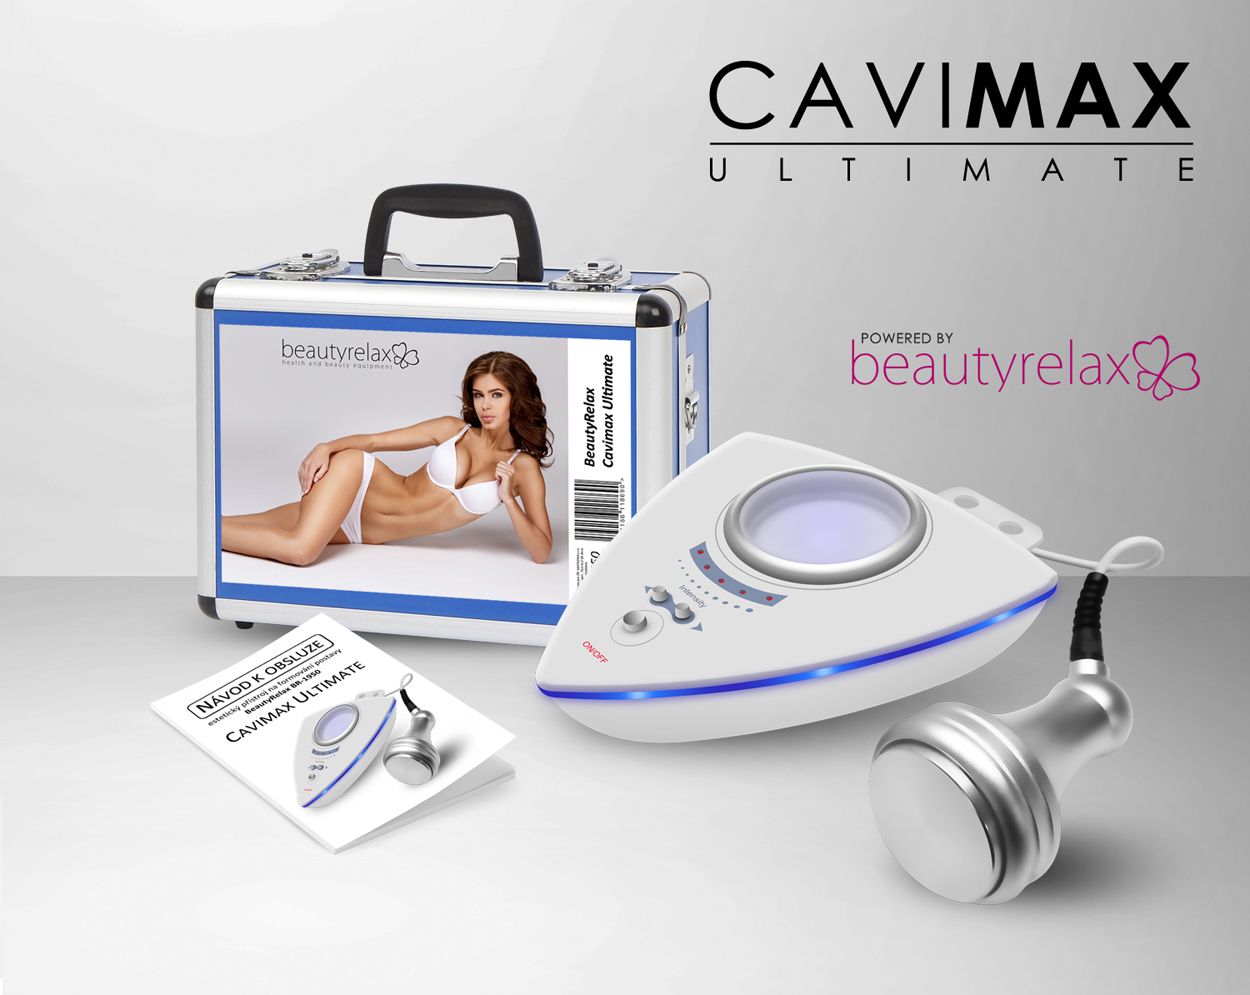 BeautyRelax Cavimax Ultimate